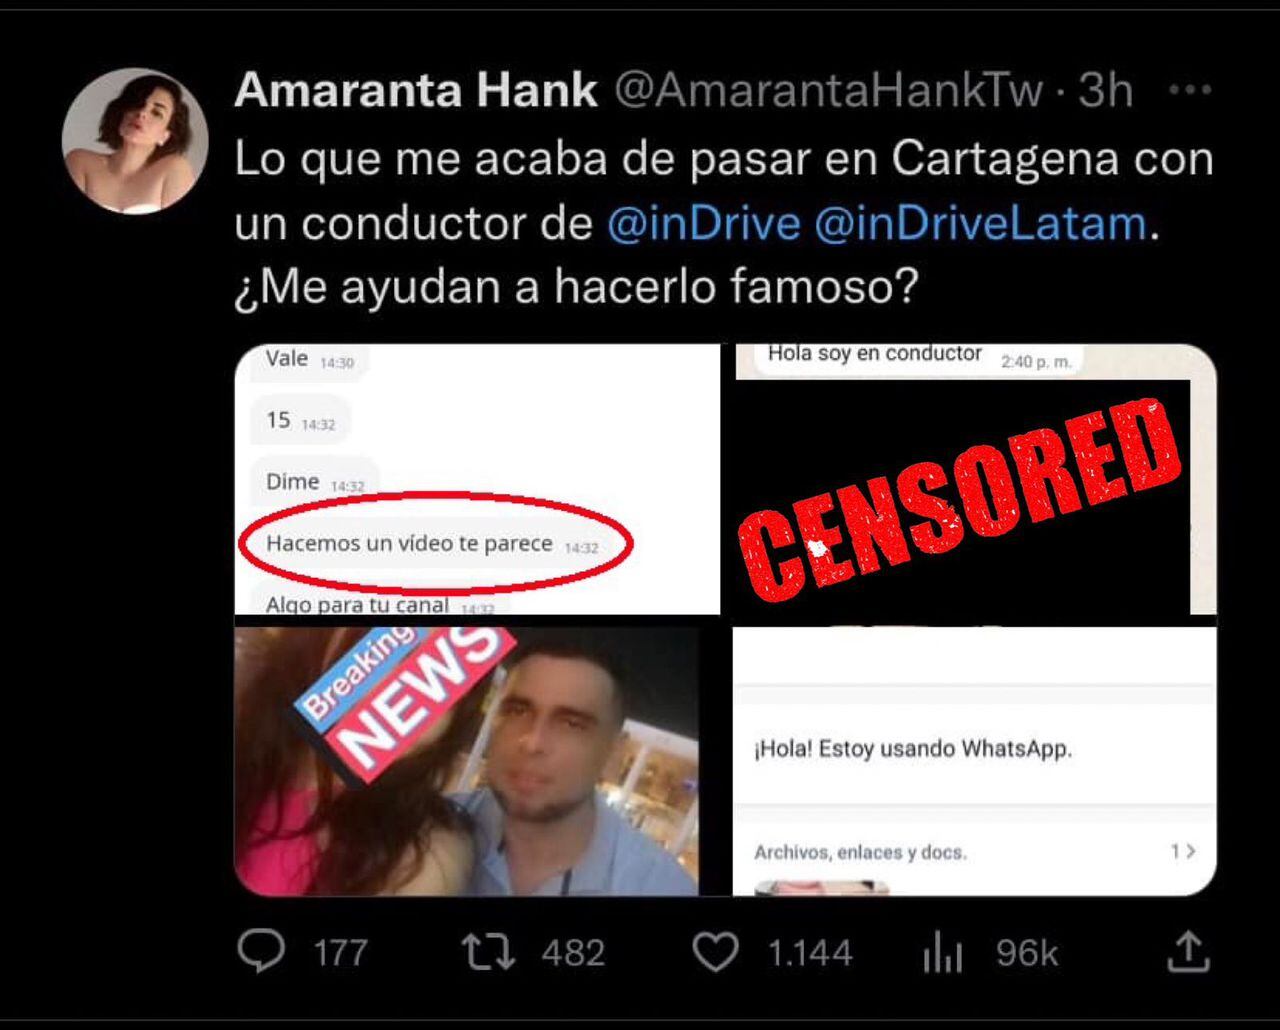 En la imagen se puede ver varias capturas de pantalla publicada por la joven. 
Una de ellas está censurada, debido a que se trataría del miembro del conductor.